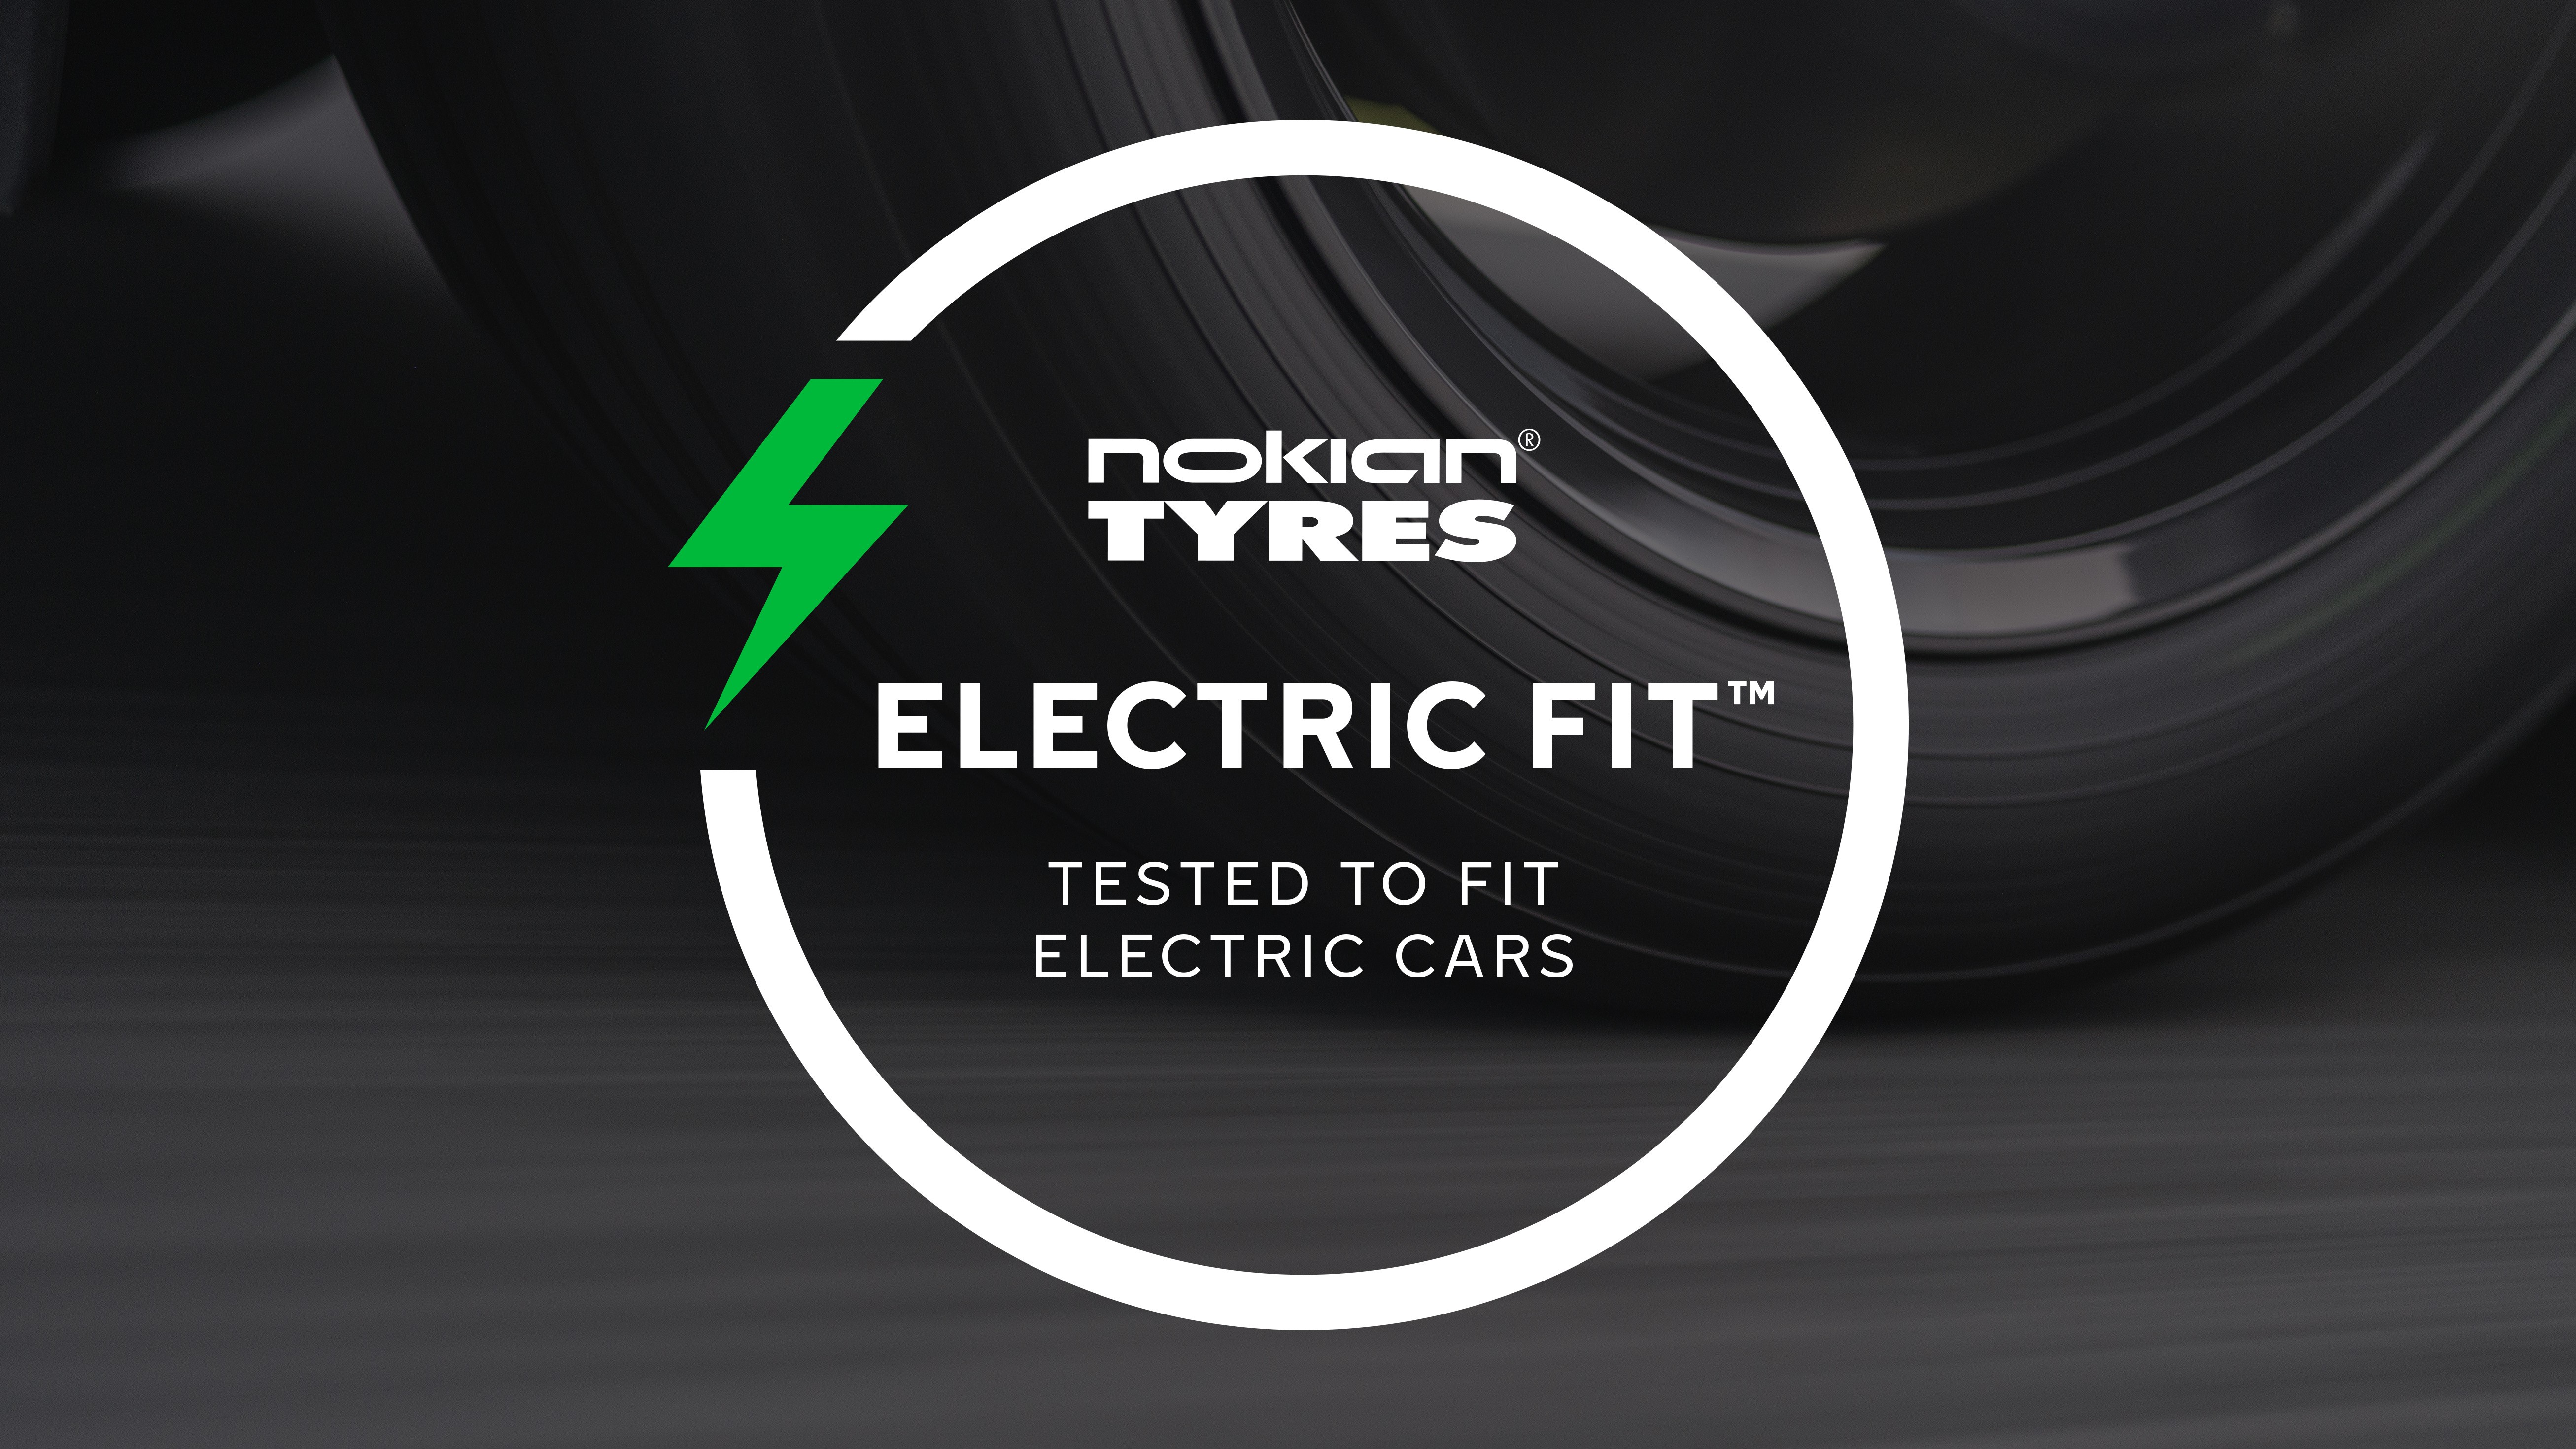 Nokian Tyres introduce noul simbol ELECTRIC FIT™ pentru a ajuta numărul tot mai mare de șoferi de vehicule electrice să găsească anvelopele potrivite pentru mașinile lor